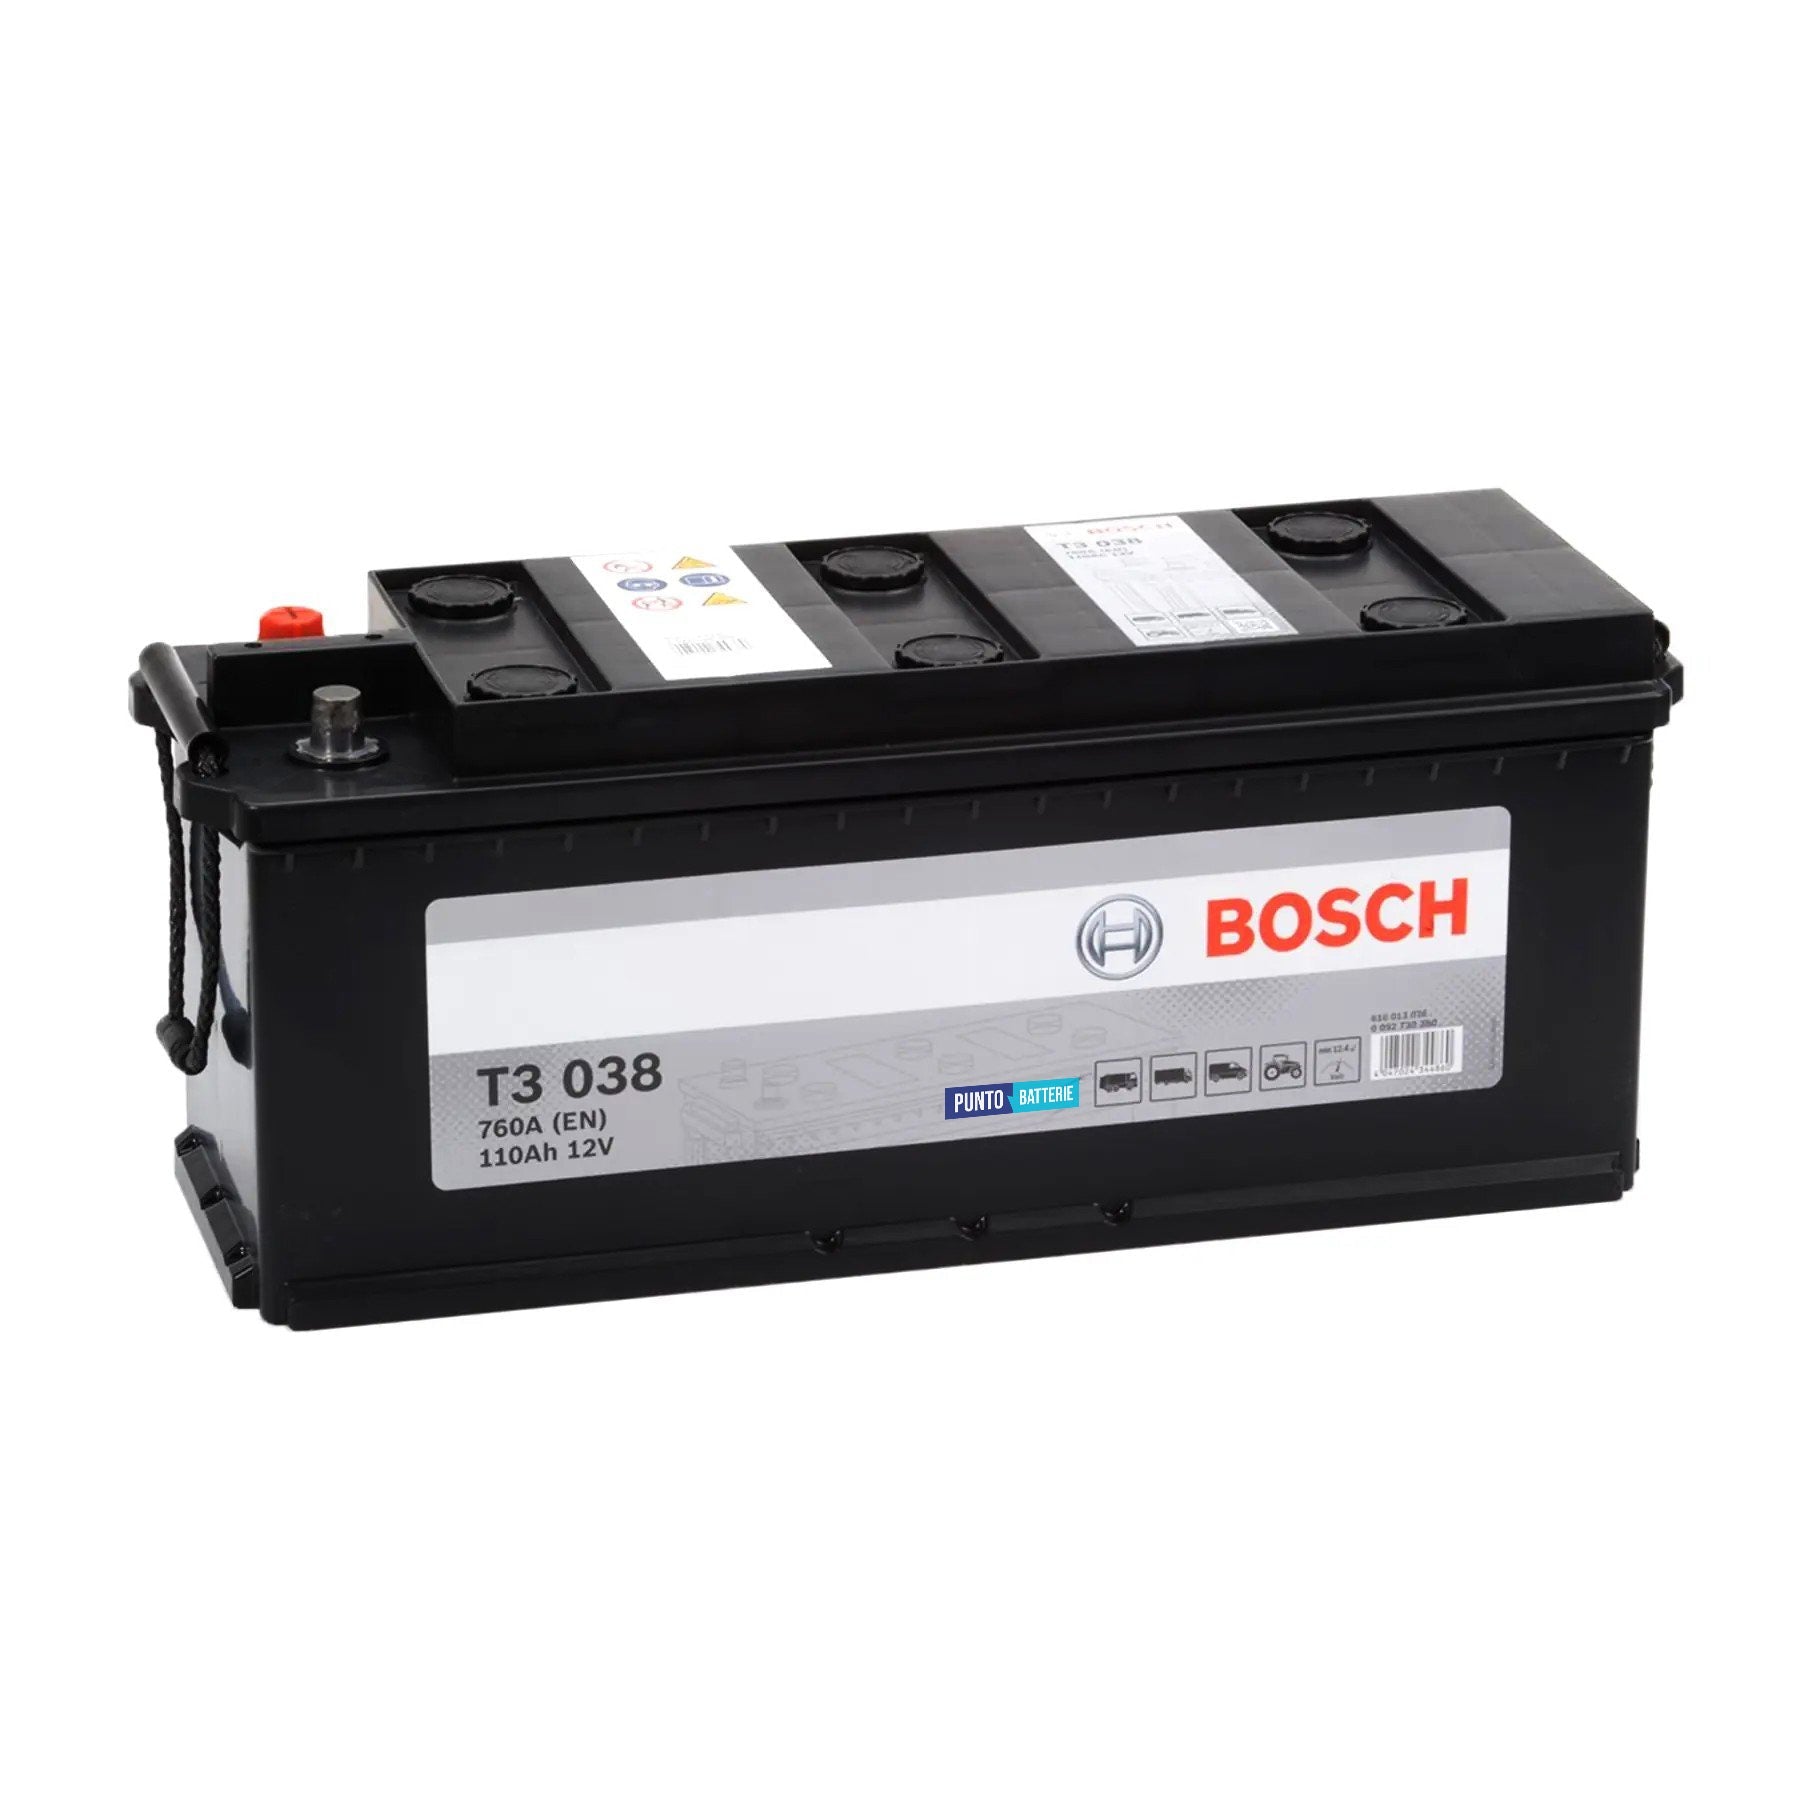 Batteria originale Bosch T3 T3038, dimensioni 514 x 175 x 210, polo positivo a sinistra, 12 volt, 110 amperora, 760 ampere. Batteria per camion e veicoli pesanti.